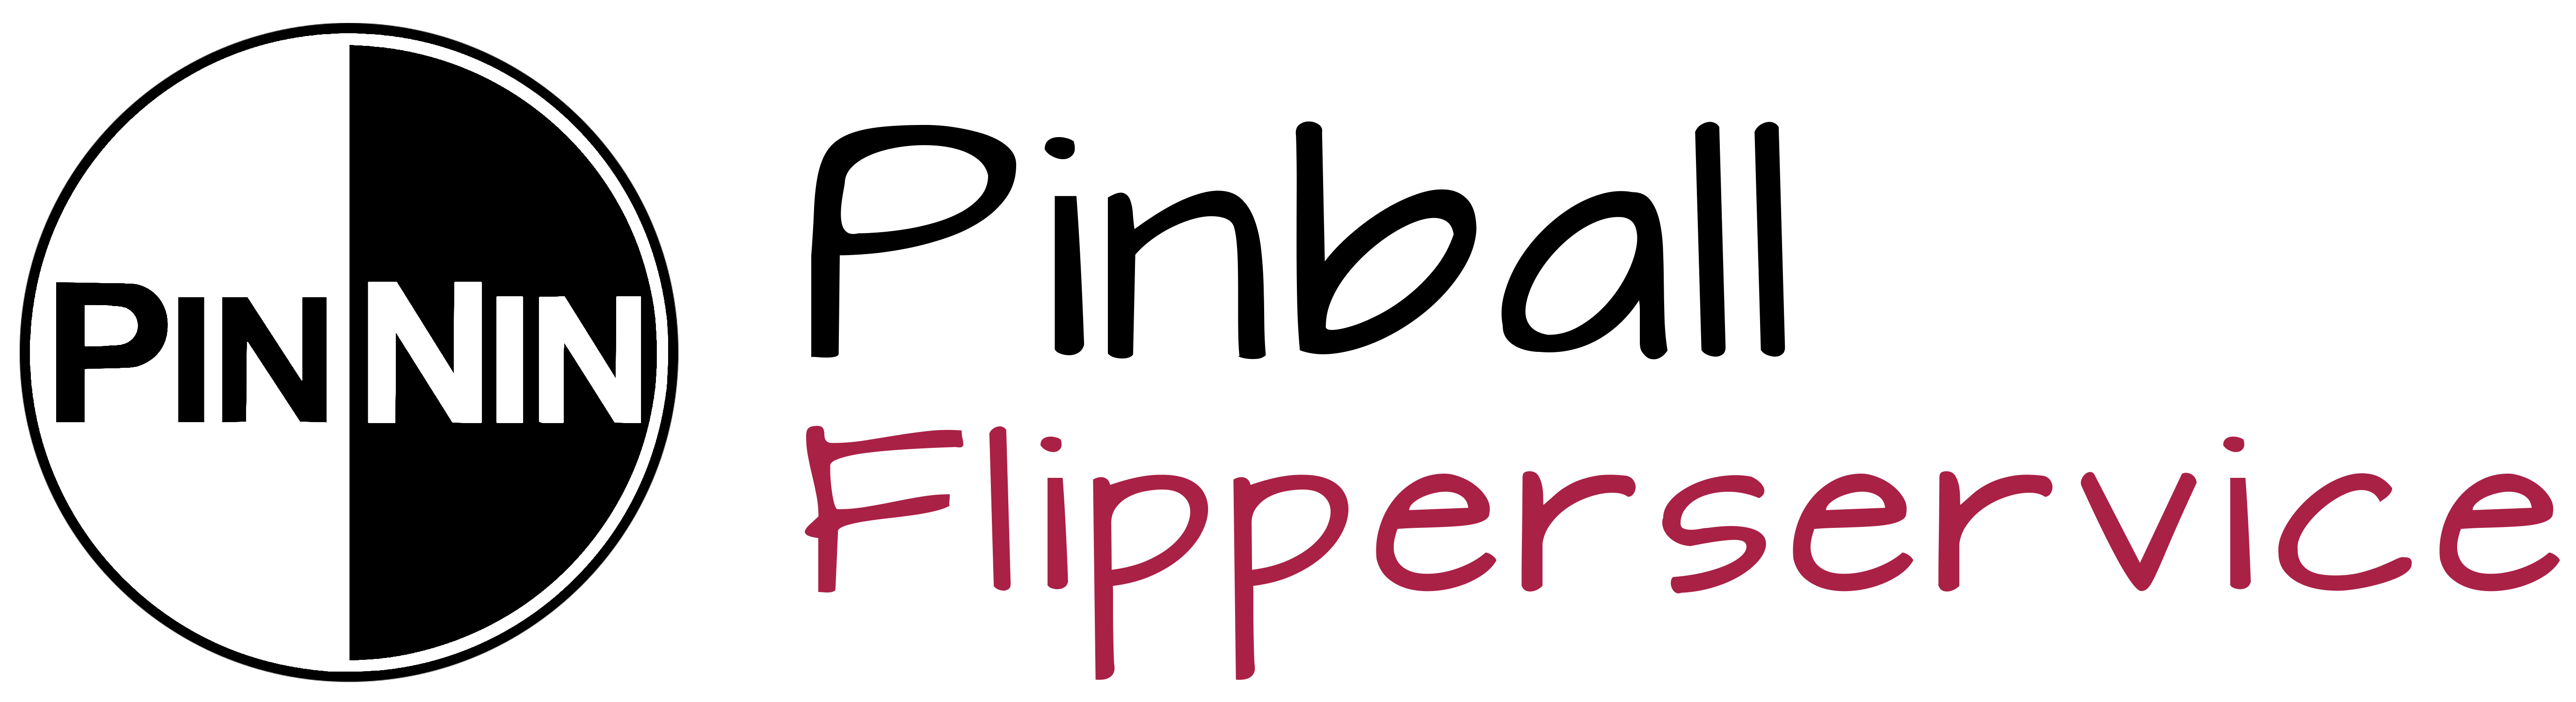 Flipperteile, Ersatzteile Flipperservice Flipperautomaten und